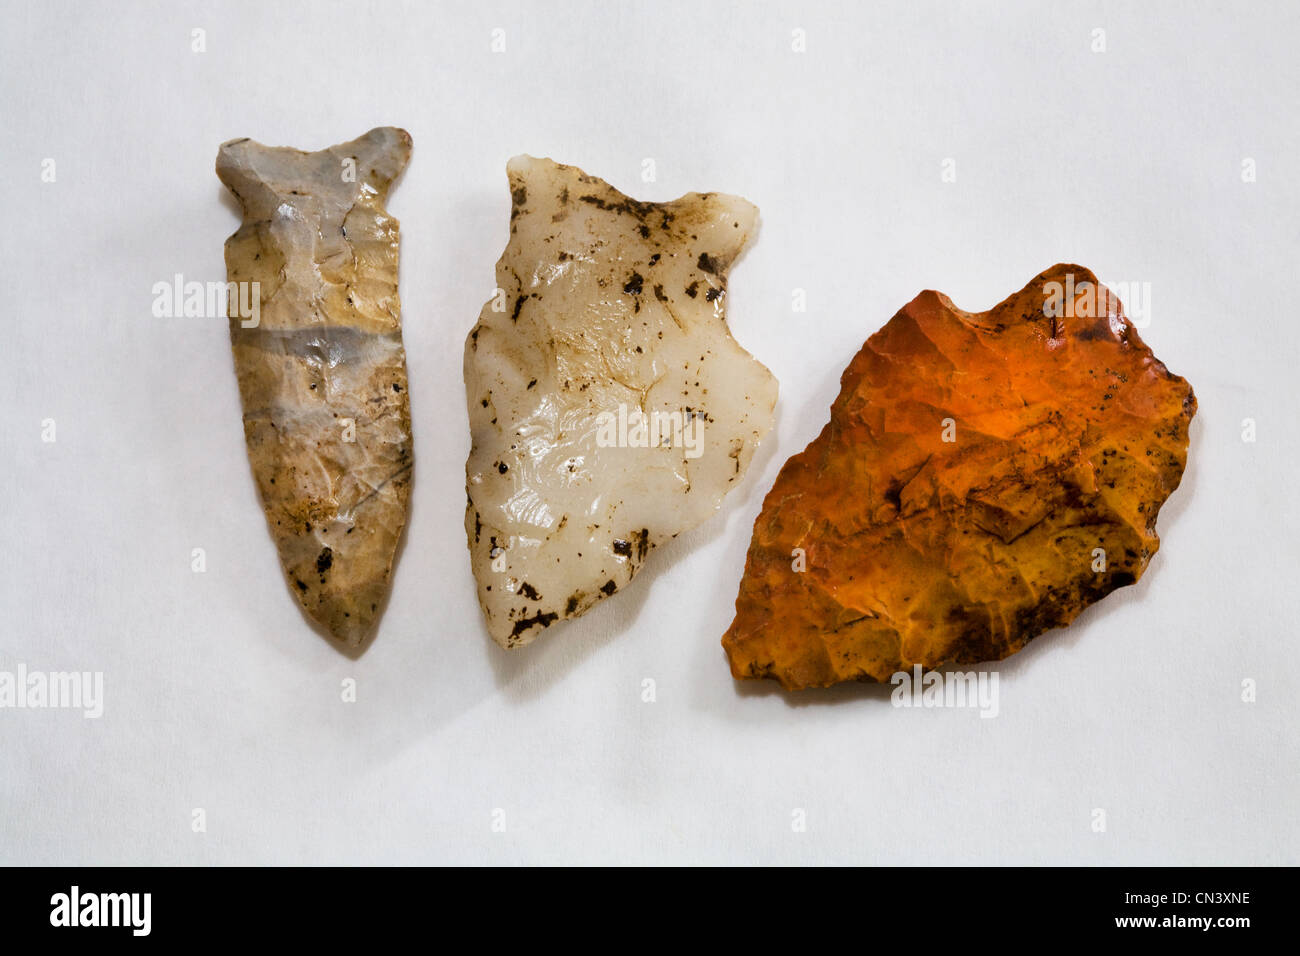 Trois pointes de silex atlatl la période archaïque du désert dans le sud-ouest américain Banque D'Images